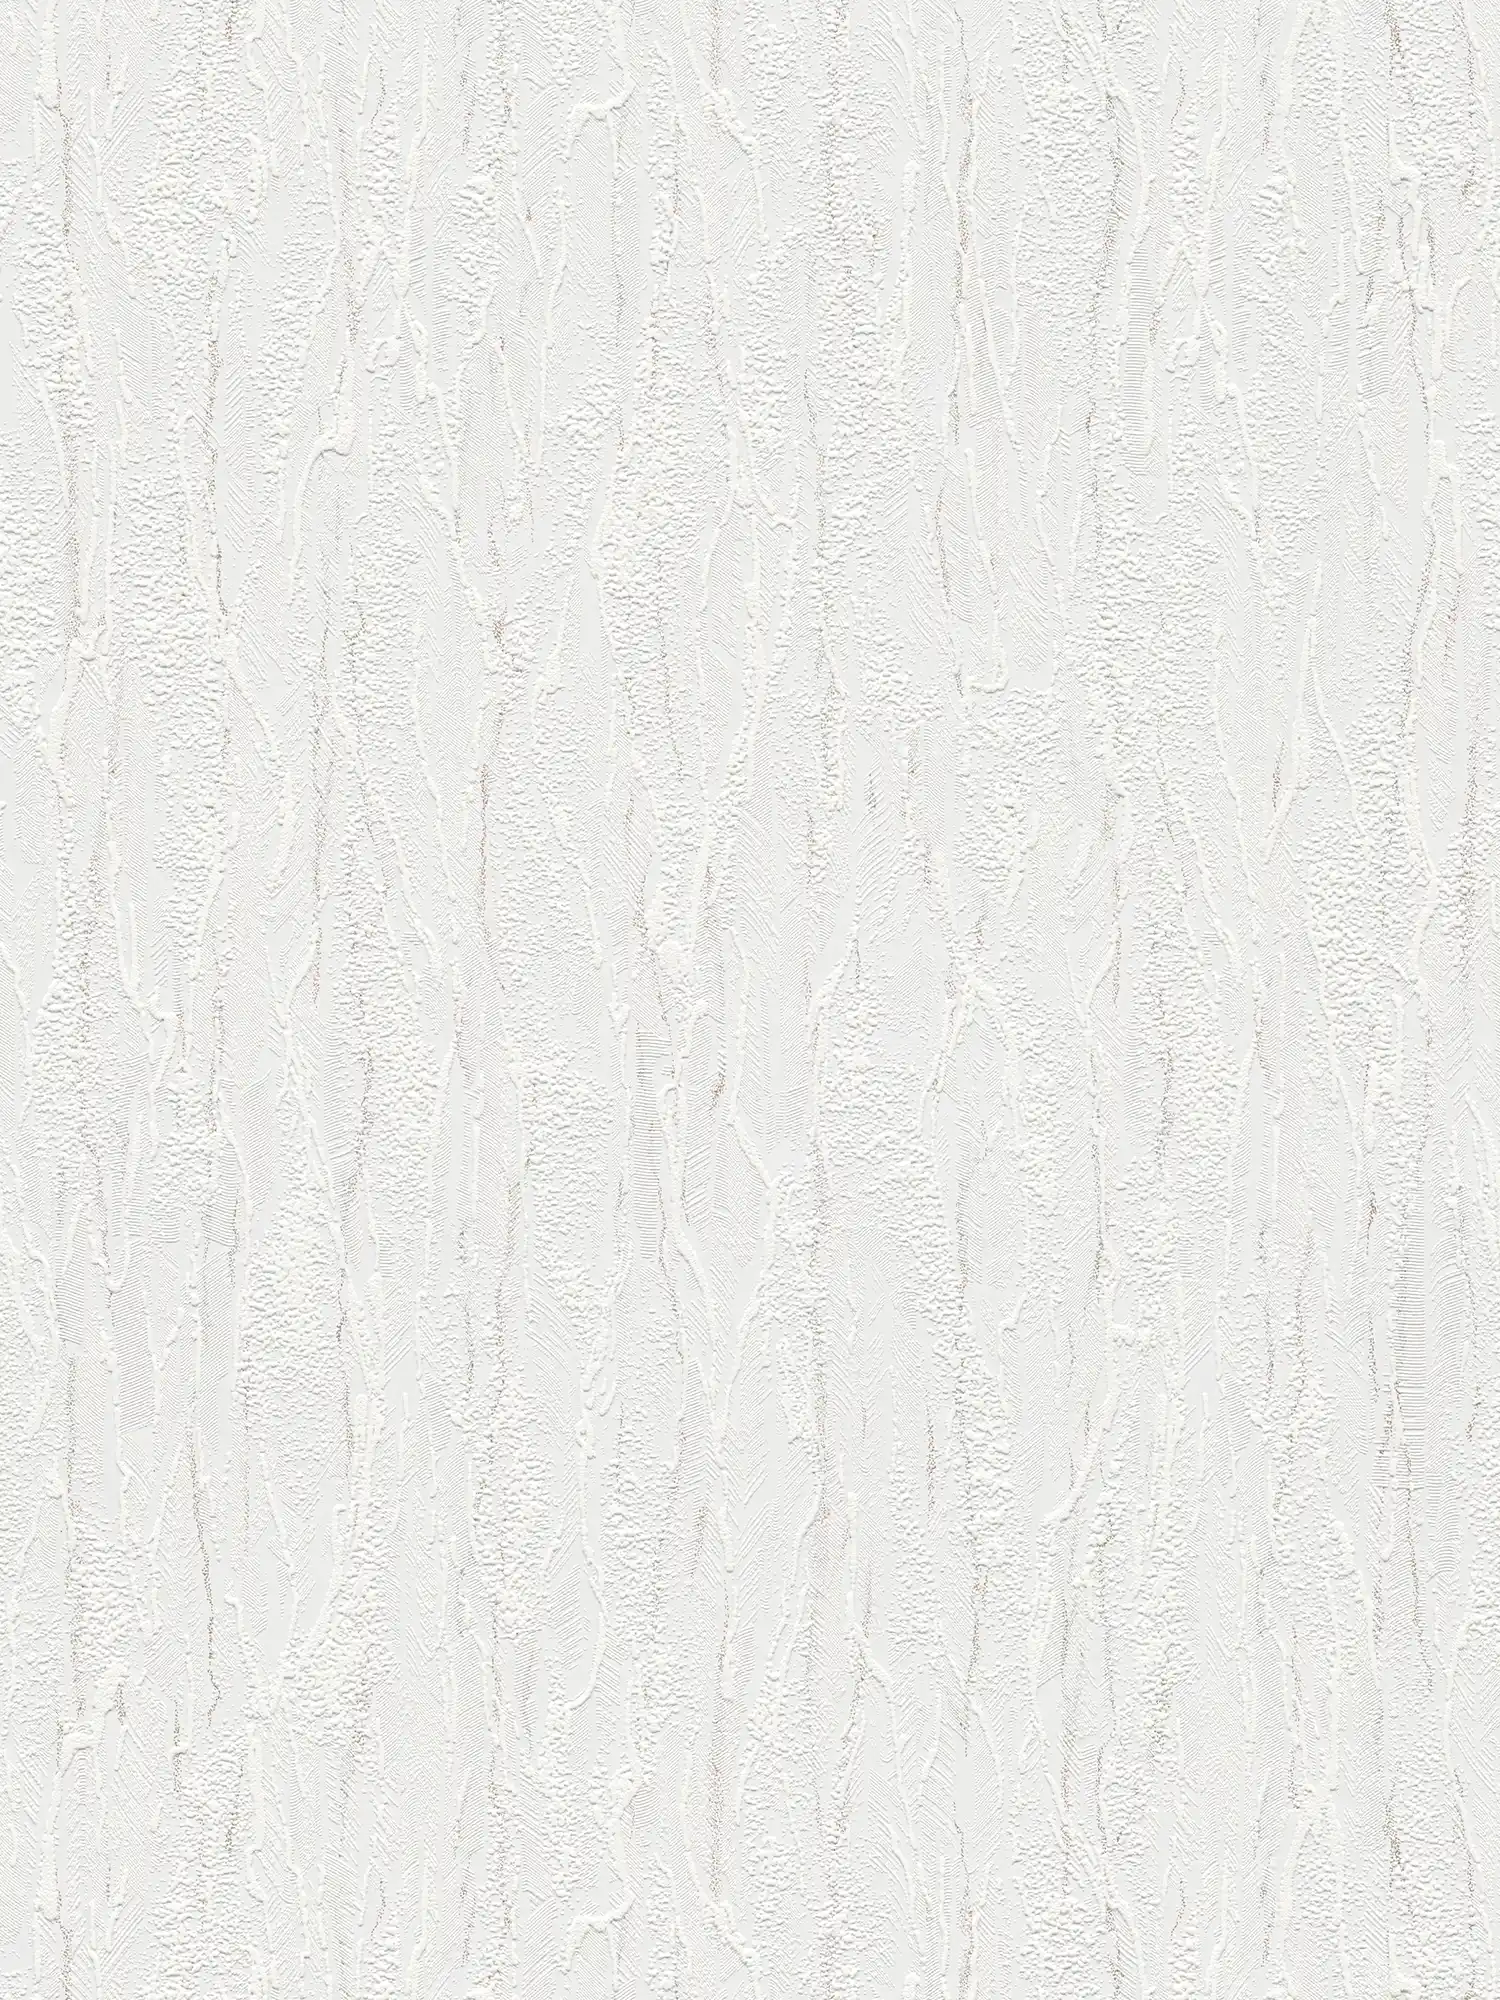 Onderlaag behang wit structuurpatroon, grijze accenten - Wit
